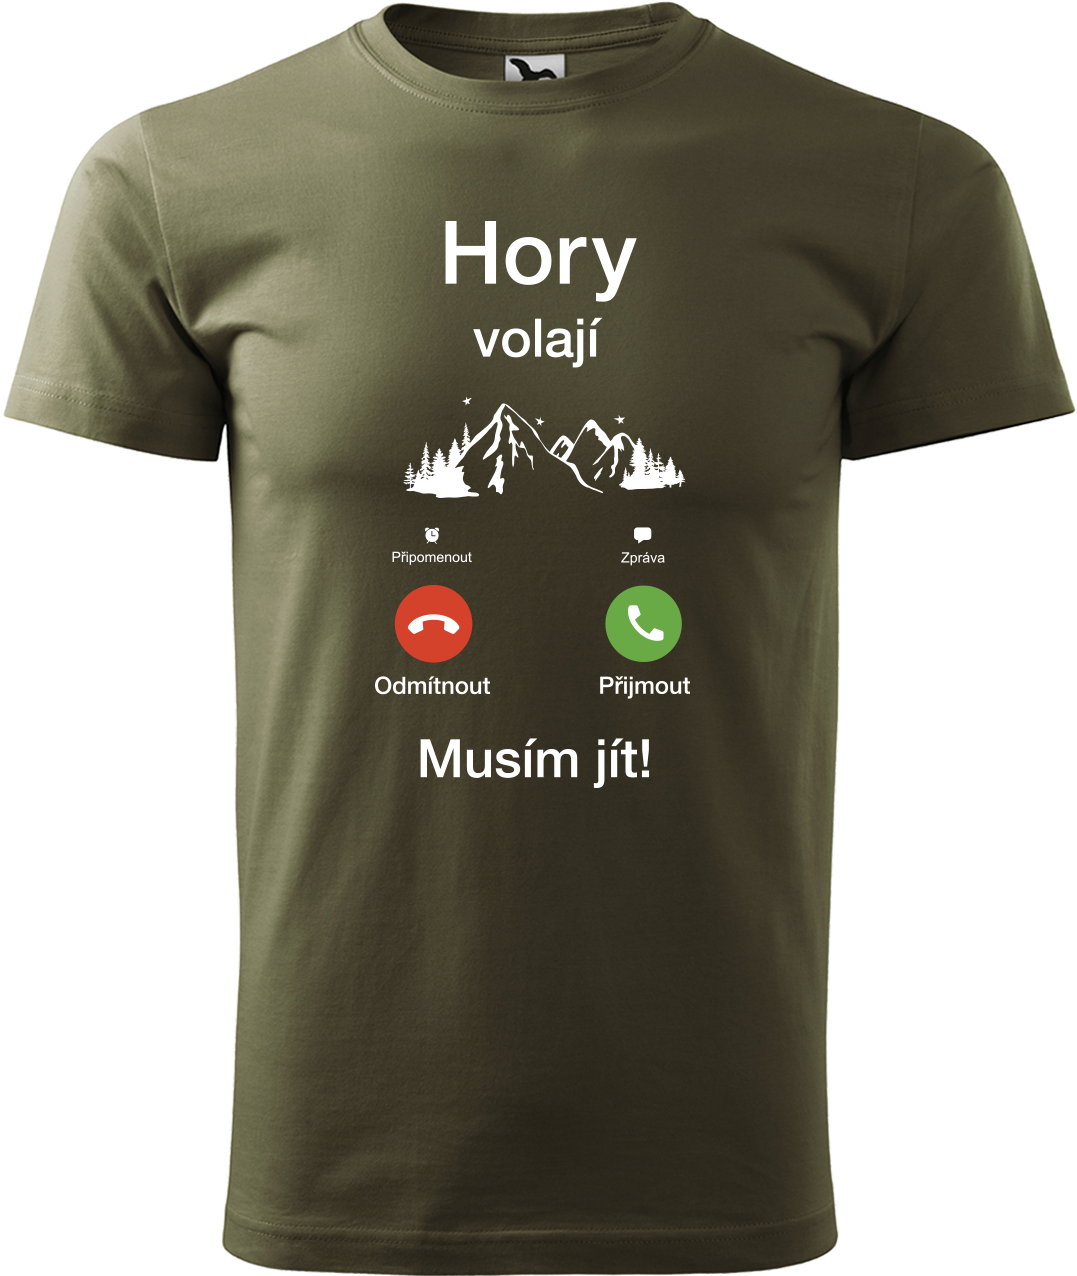 Pánské tričko na hory - Hory volají, musím jít (telefon) Velikost: S, Barva: Military (69)